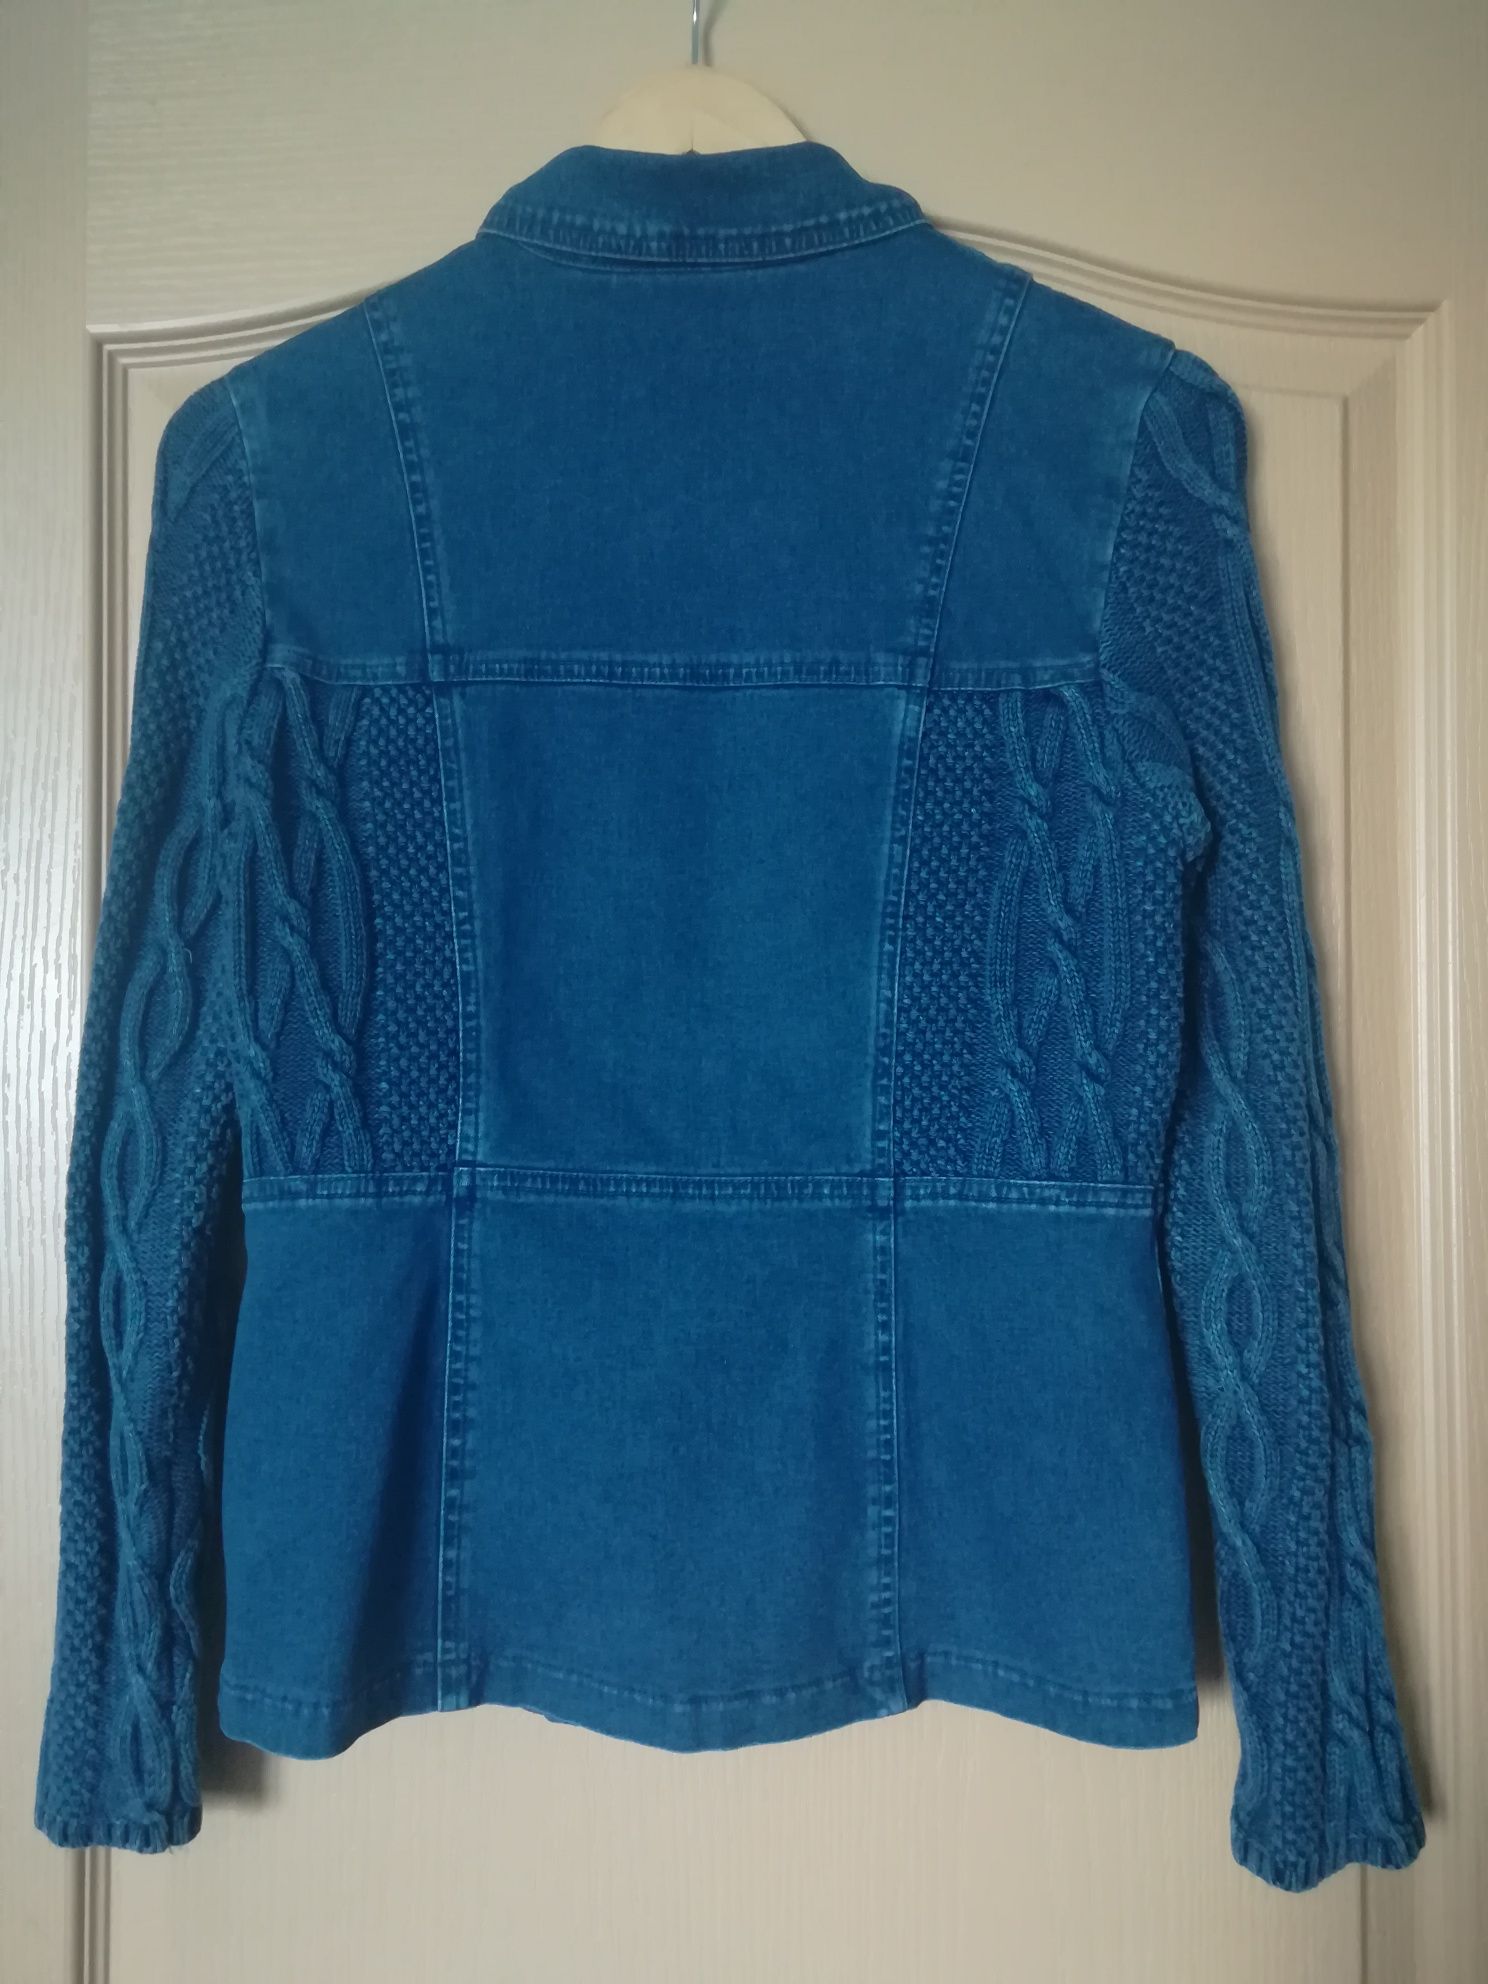 Джинсовый пиджак,кофта,ветровка S-M.Куртка Peak S-L